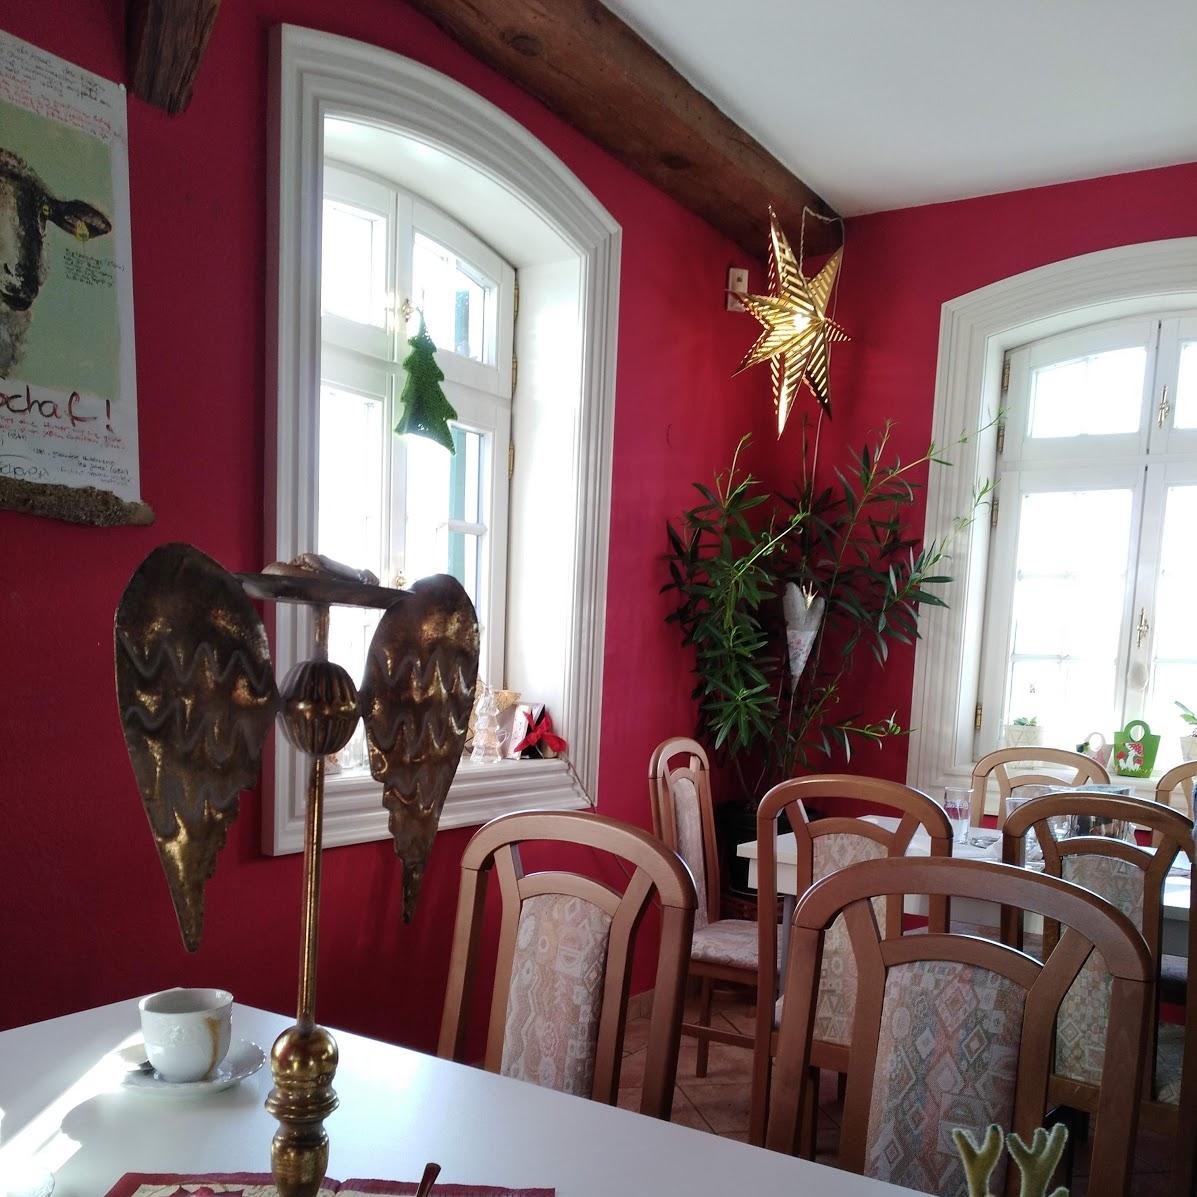 Restaurant "Jagdschloss Fasanerie" in Rhönblick